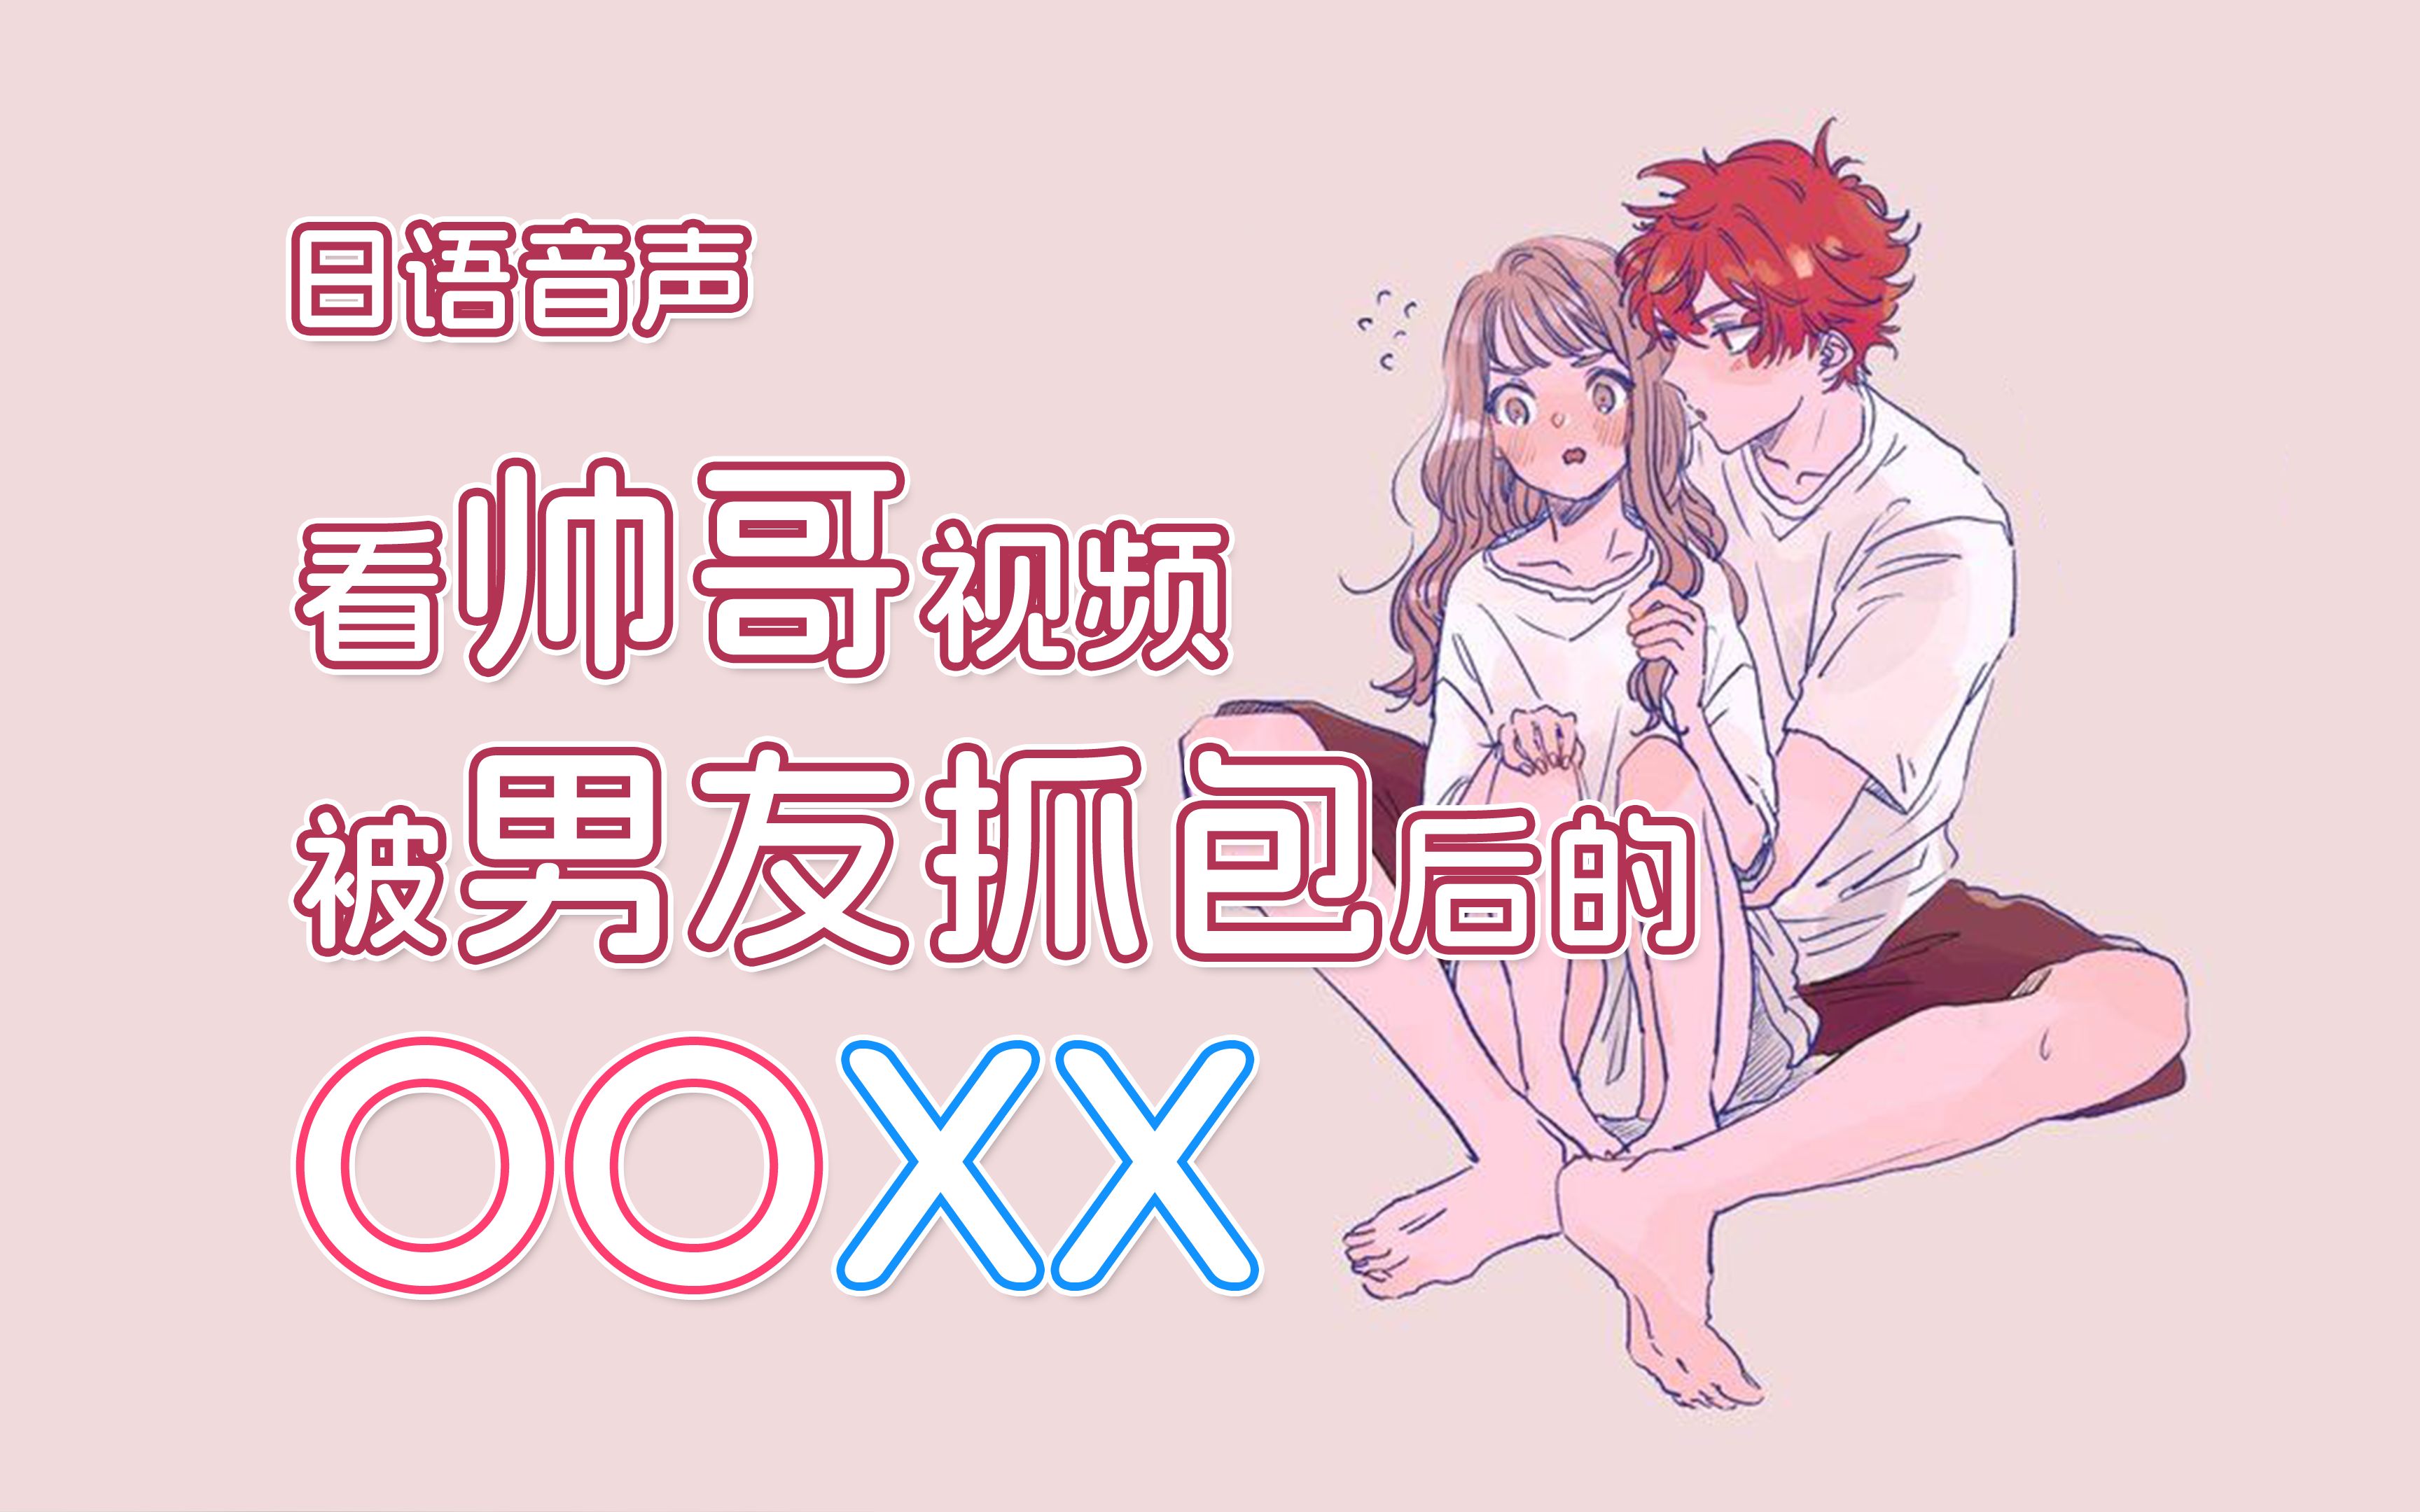 【女性向日语音声/剧情】看帅哥被男友抓包后的OOXX...【林夏树】